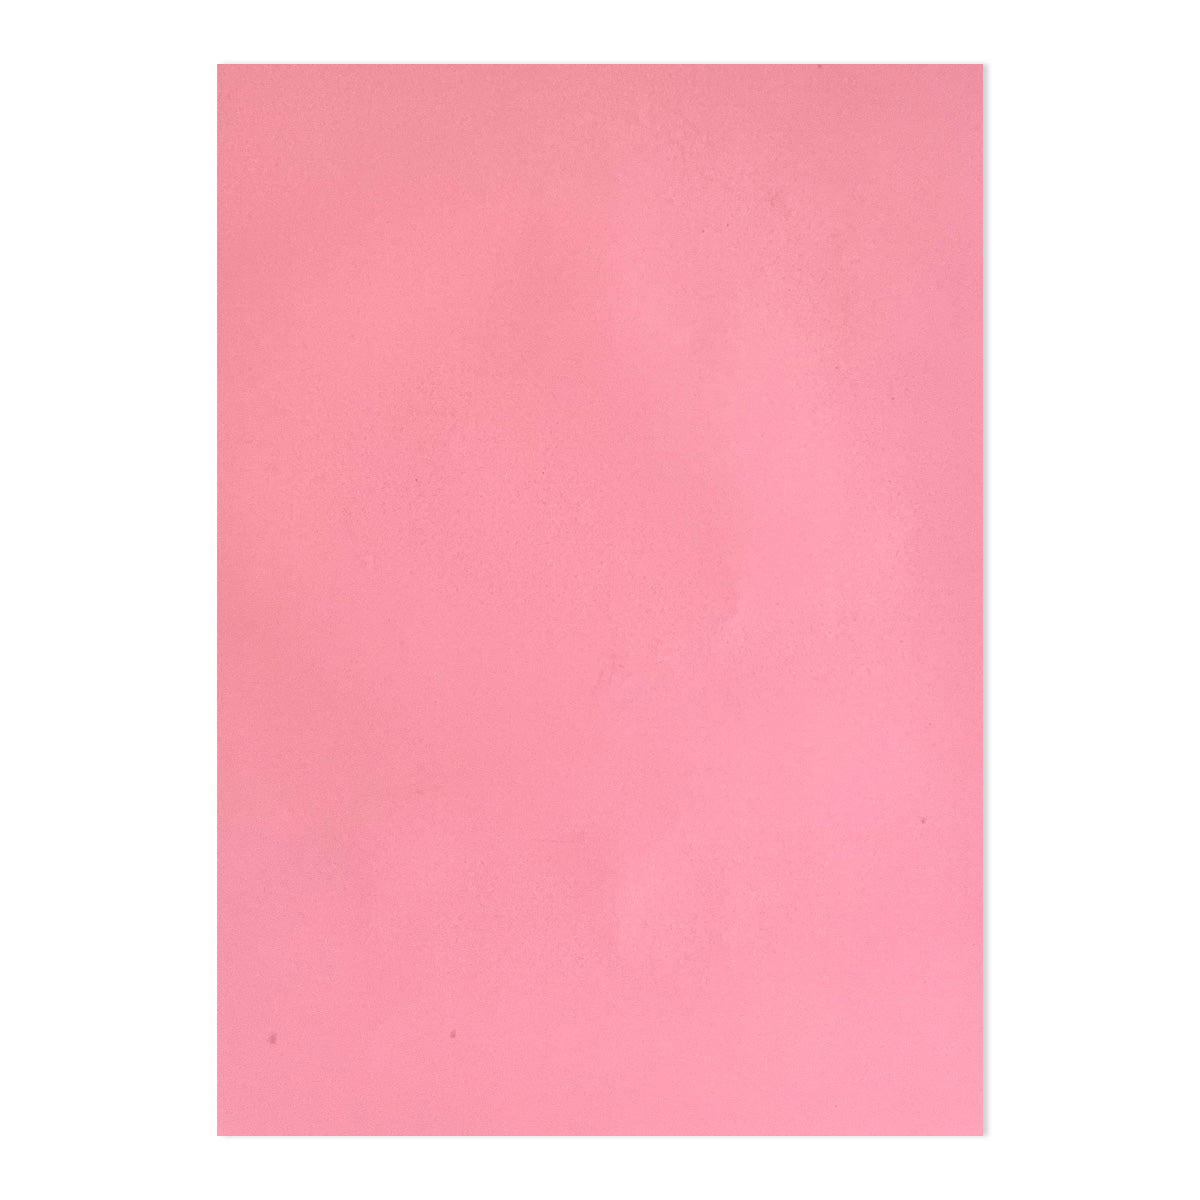 9x12 Report Covers in Pink Lemonade Vellum - 100 Pack